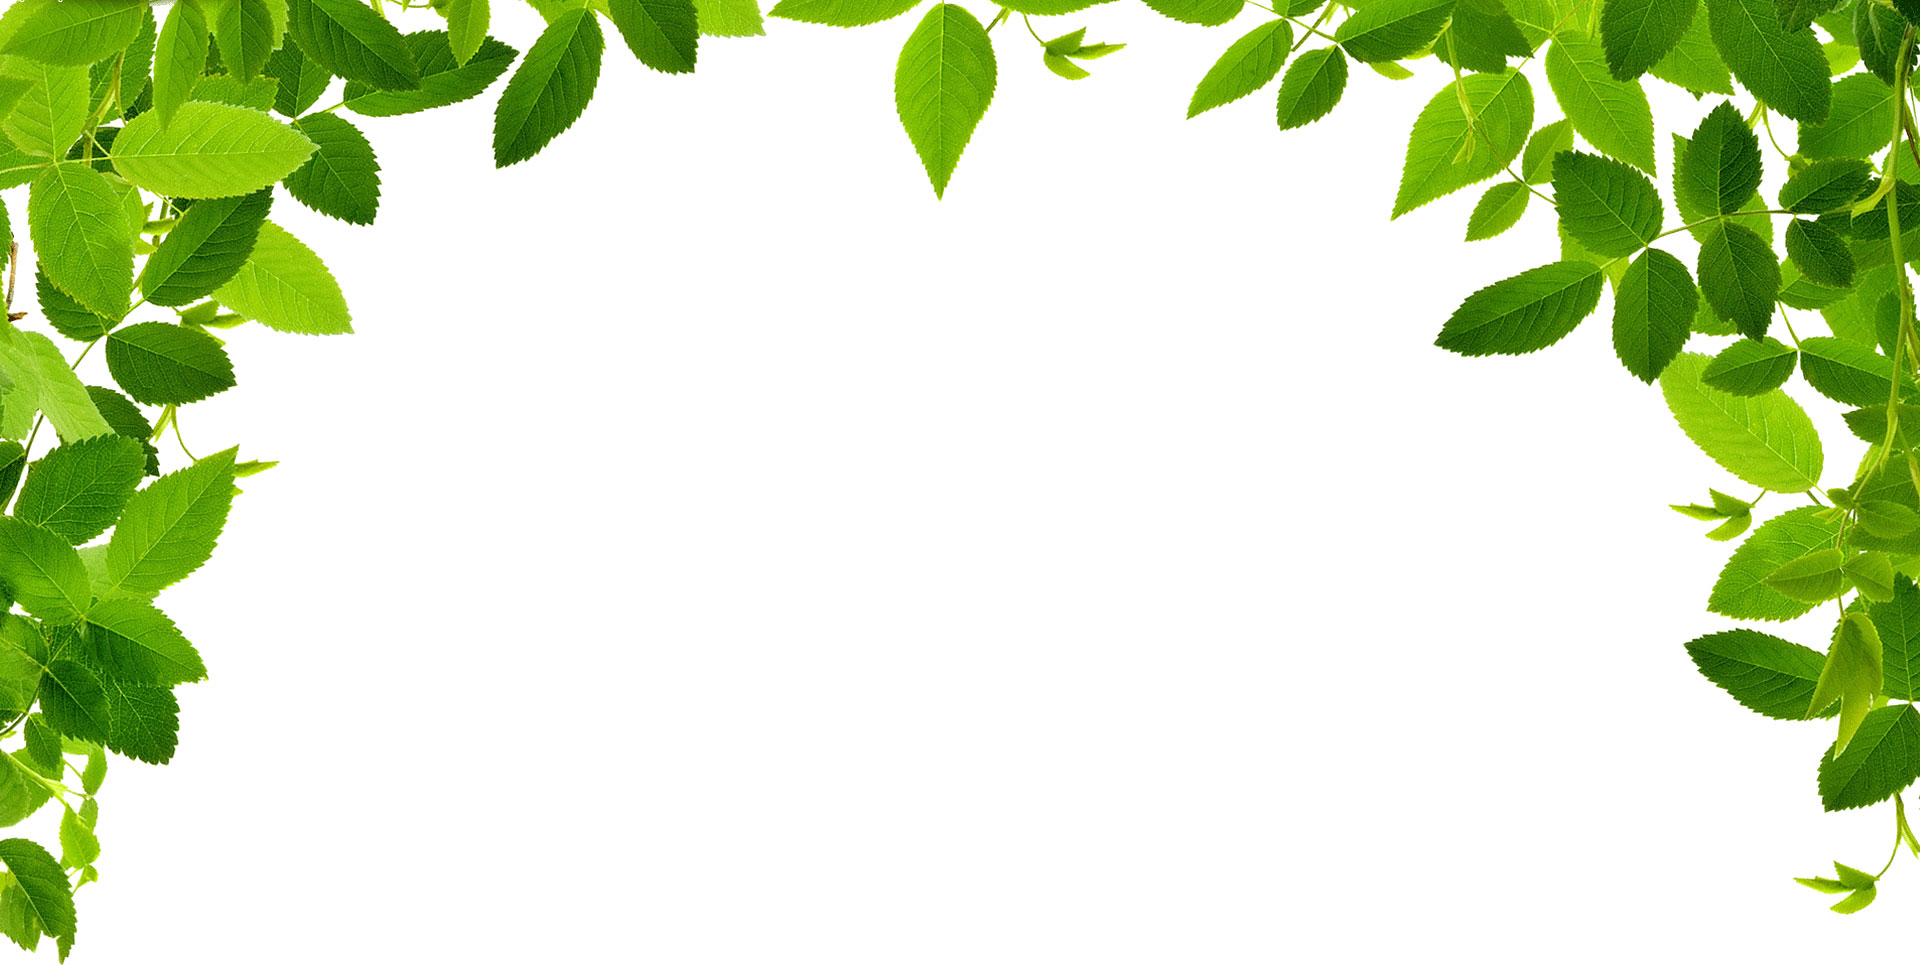 葉っぱ 草木のイラスト フリー素材 フレーム枠no 142 緑のカーテン